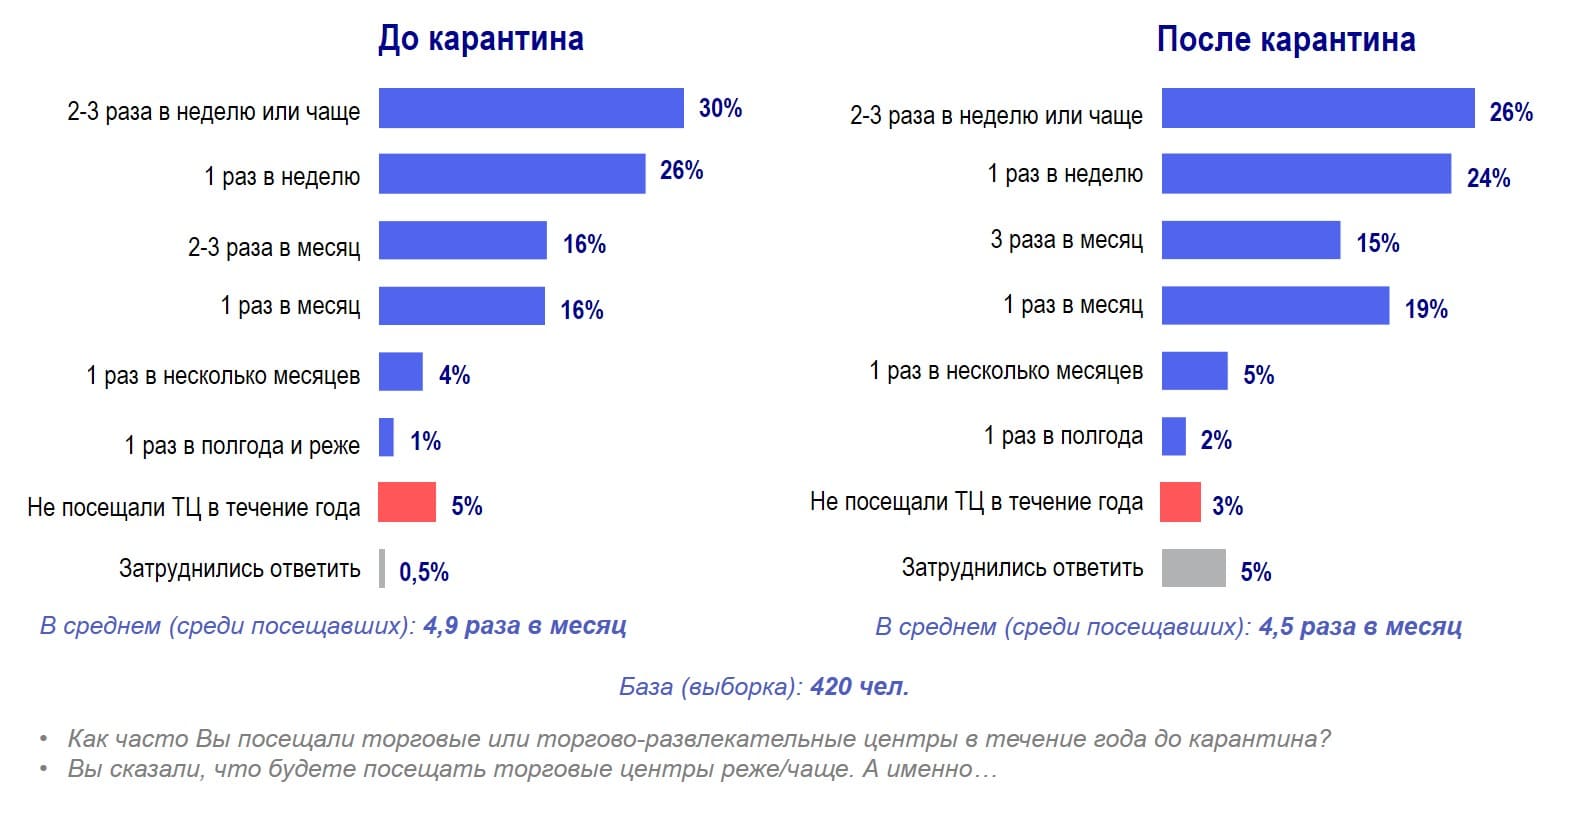 Сканмаркет: Частота посещения московских торговых центров до и после карантина